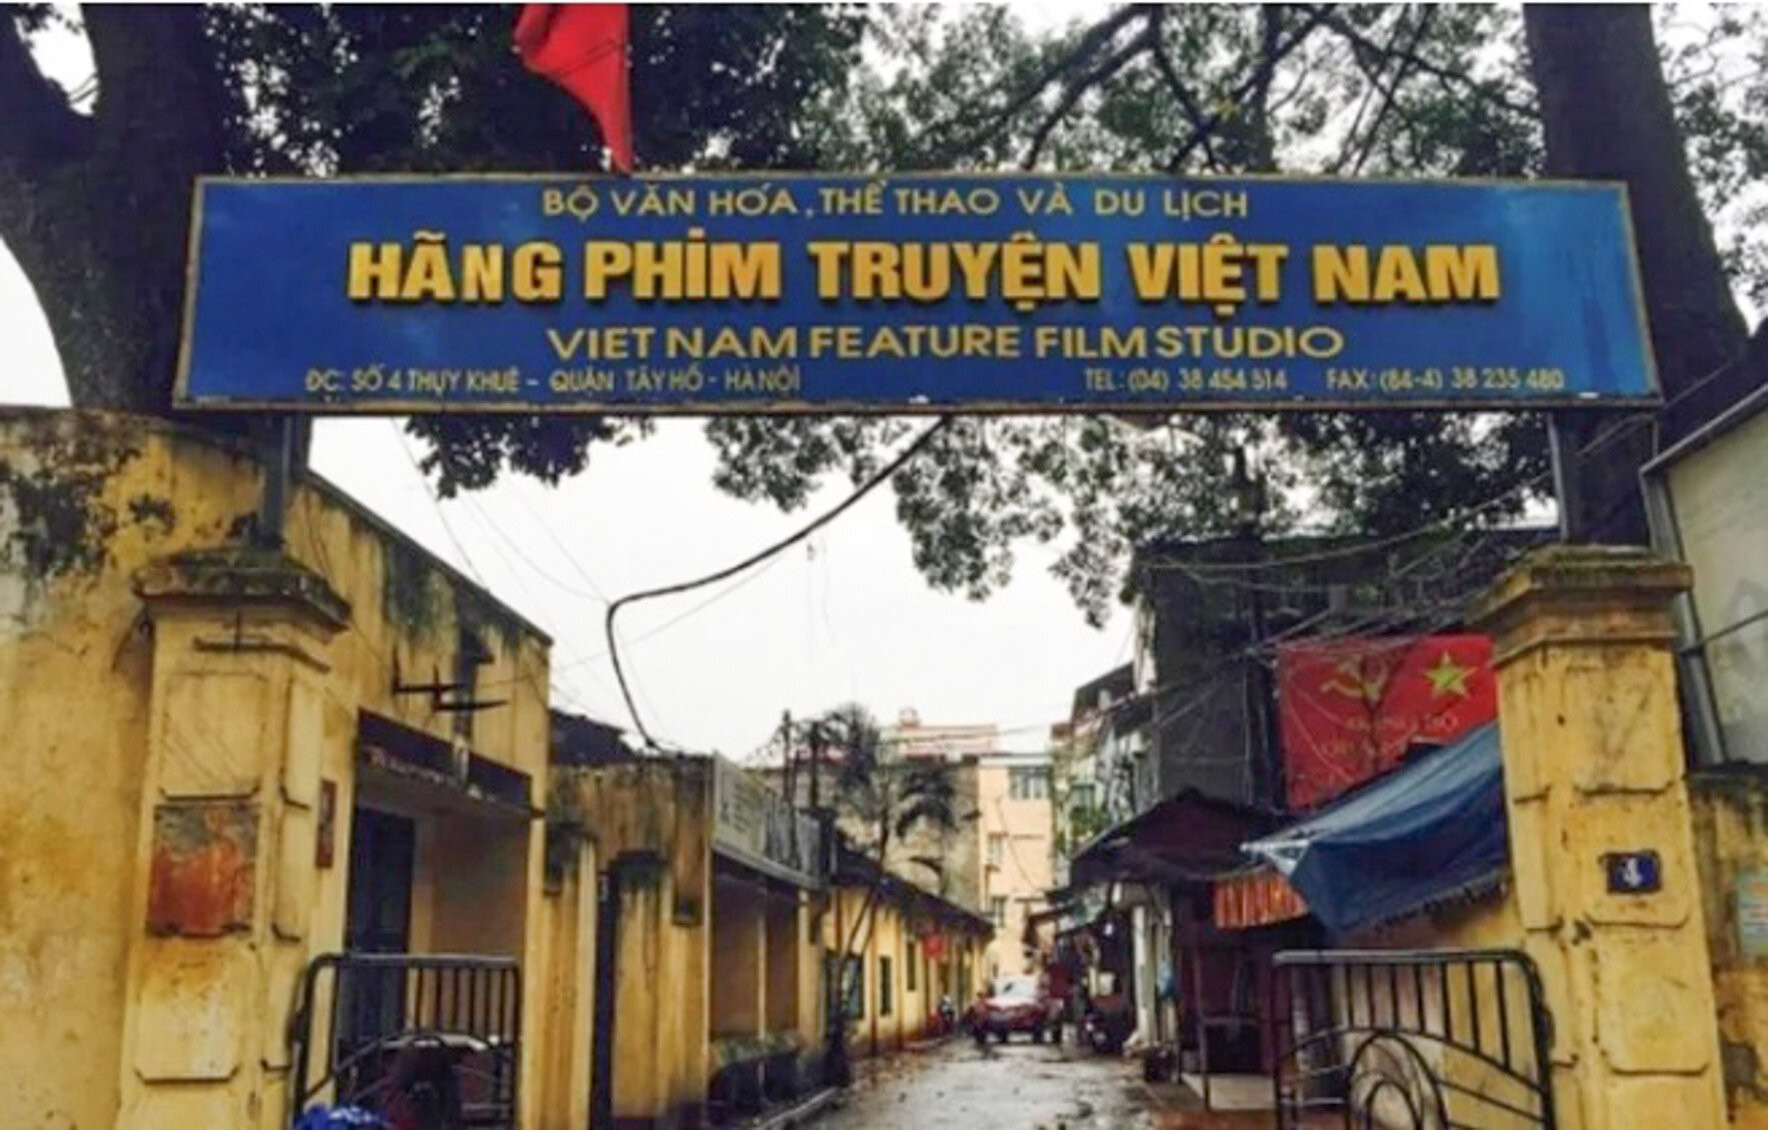 Hãng phim truyện Việt Nam (số 4 Thuỵ Khuê, Hà Nội) từng là niềm tự hào của nền điện ảnh cách mạng Việt Nam. (Ảnh: Báo Văn hoá)